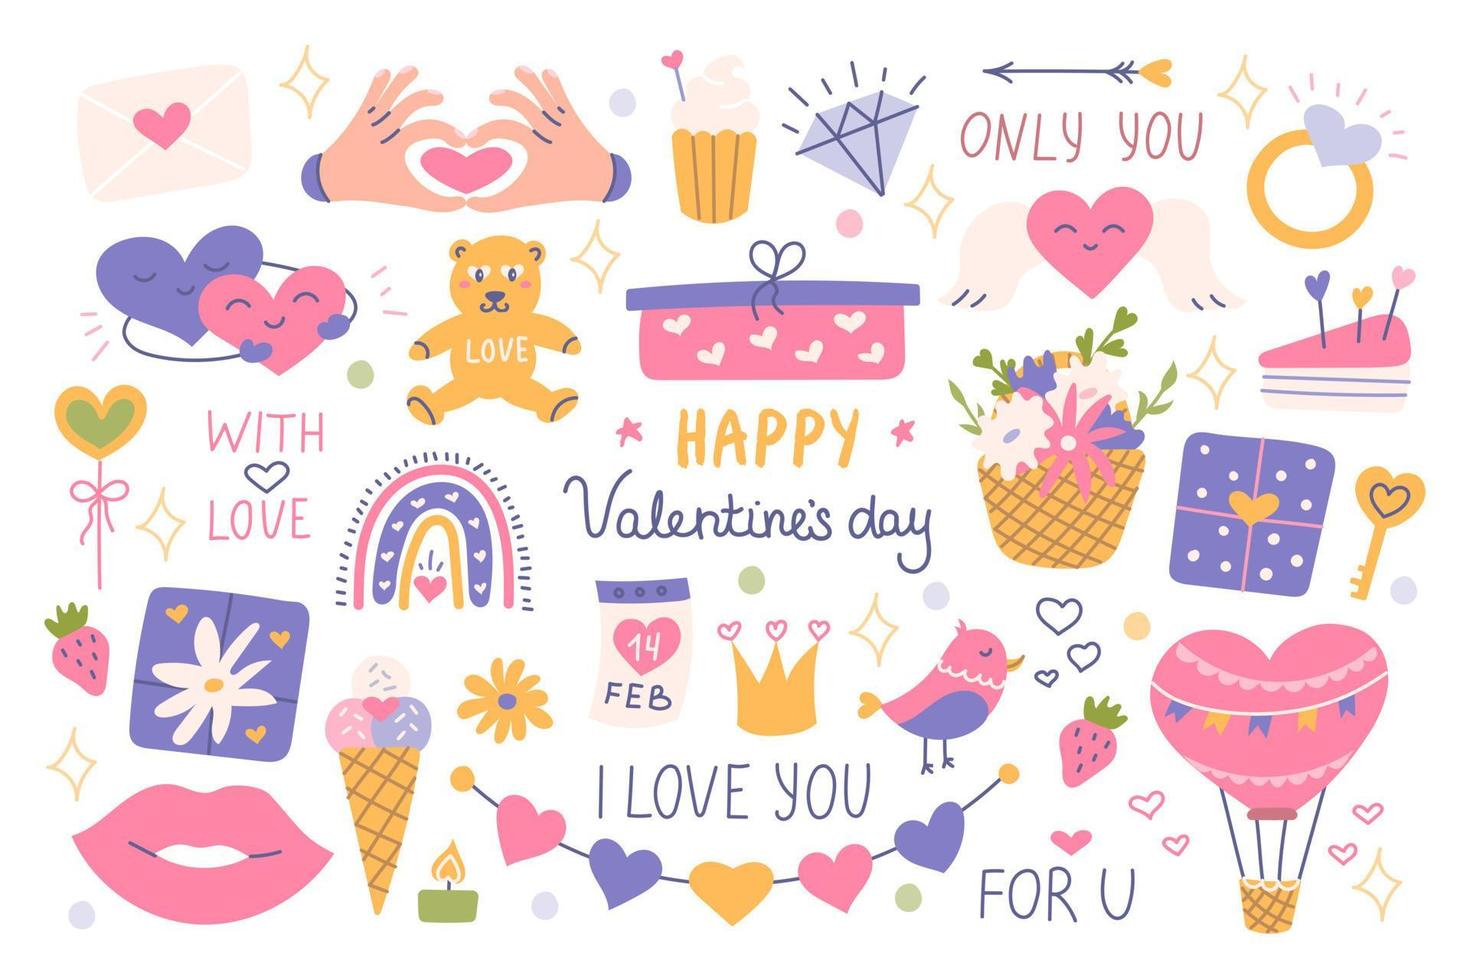 Stellen Sie den Valentinstag mit dekorativen Elementen, Symbolen der Liebe, Phrasen ein. flache Vektorgrafik für Aufkleber, Postkarten vektor